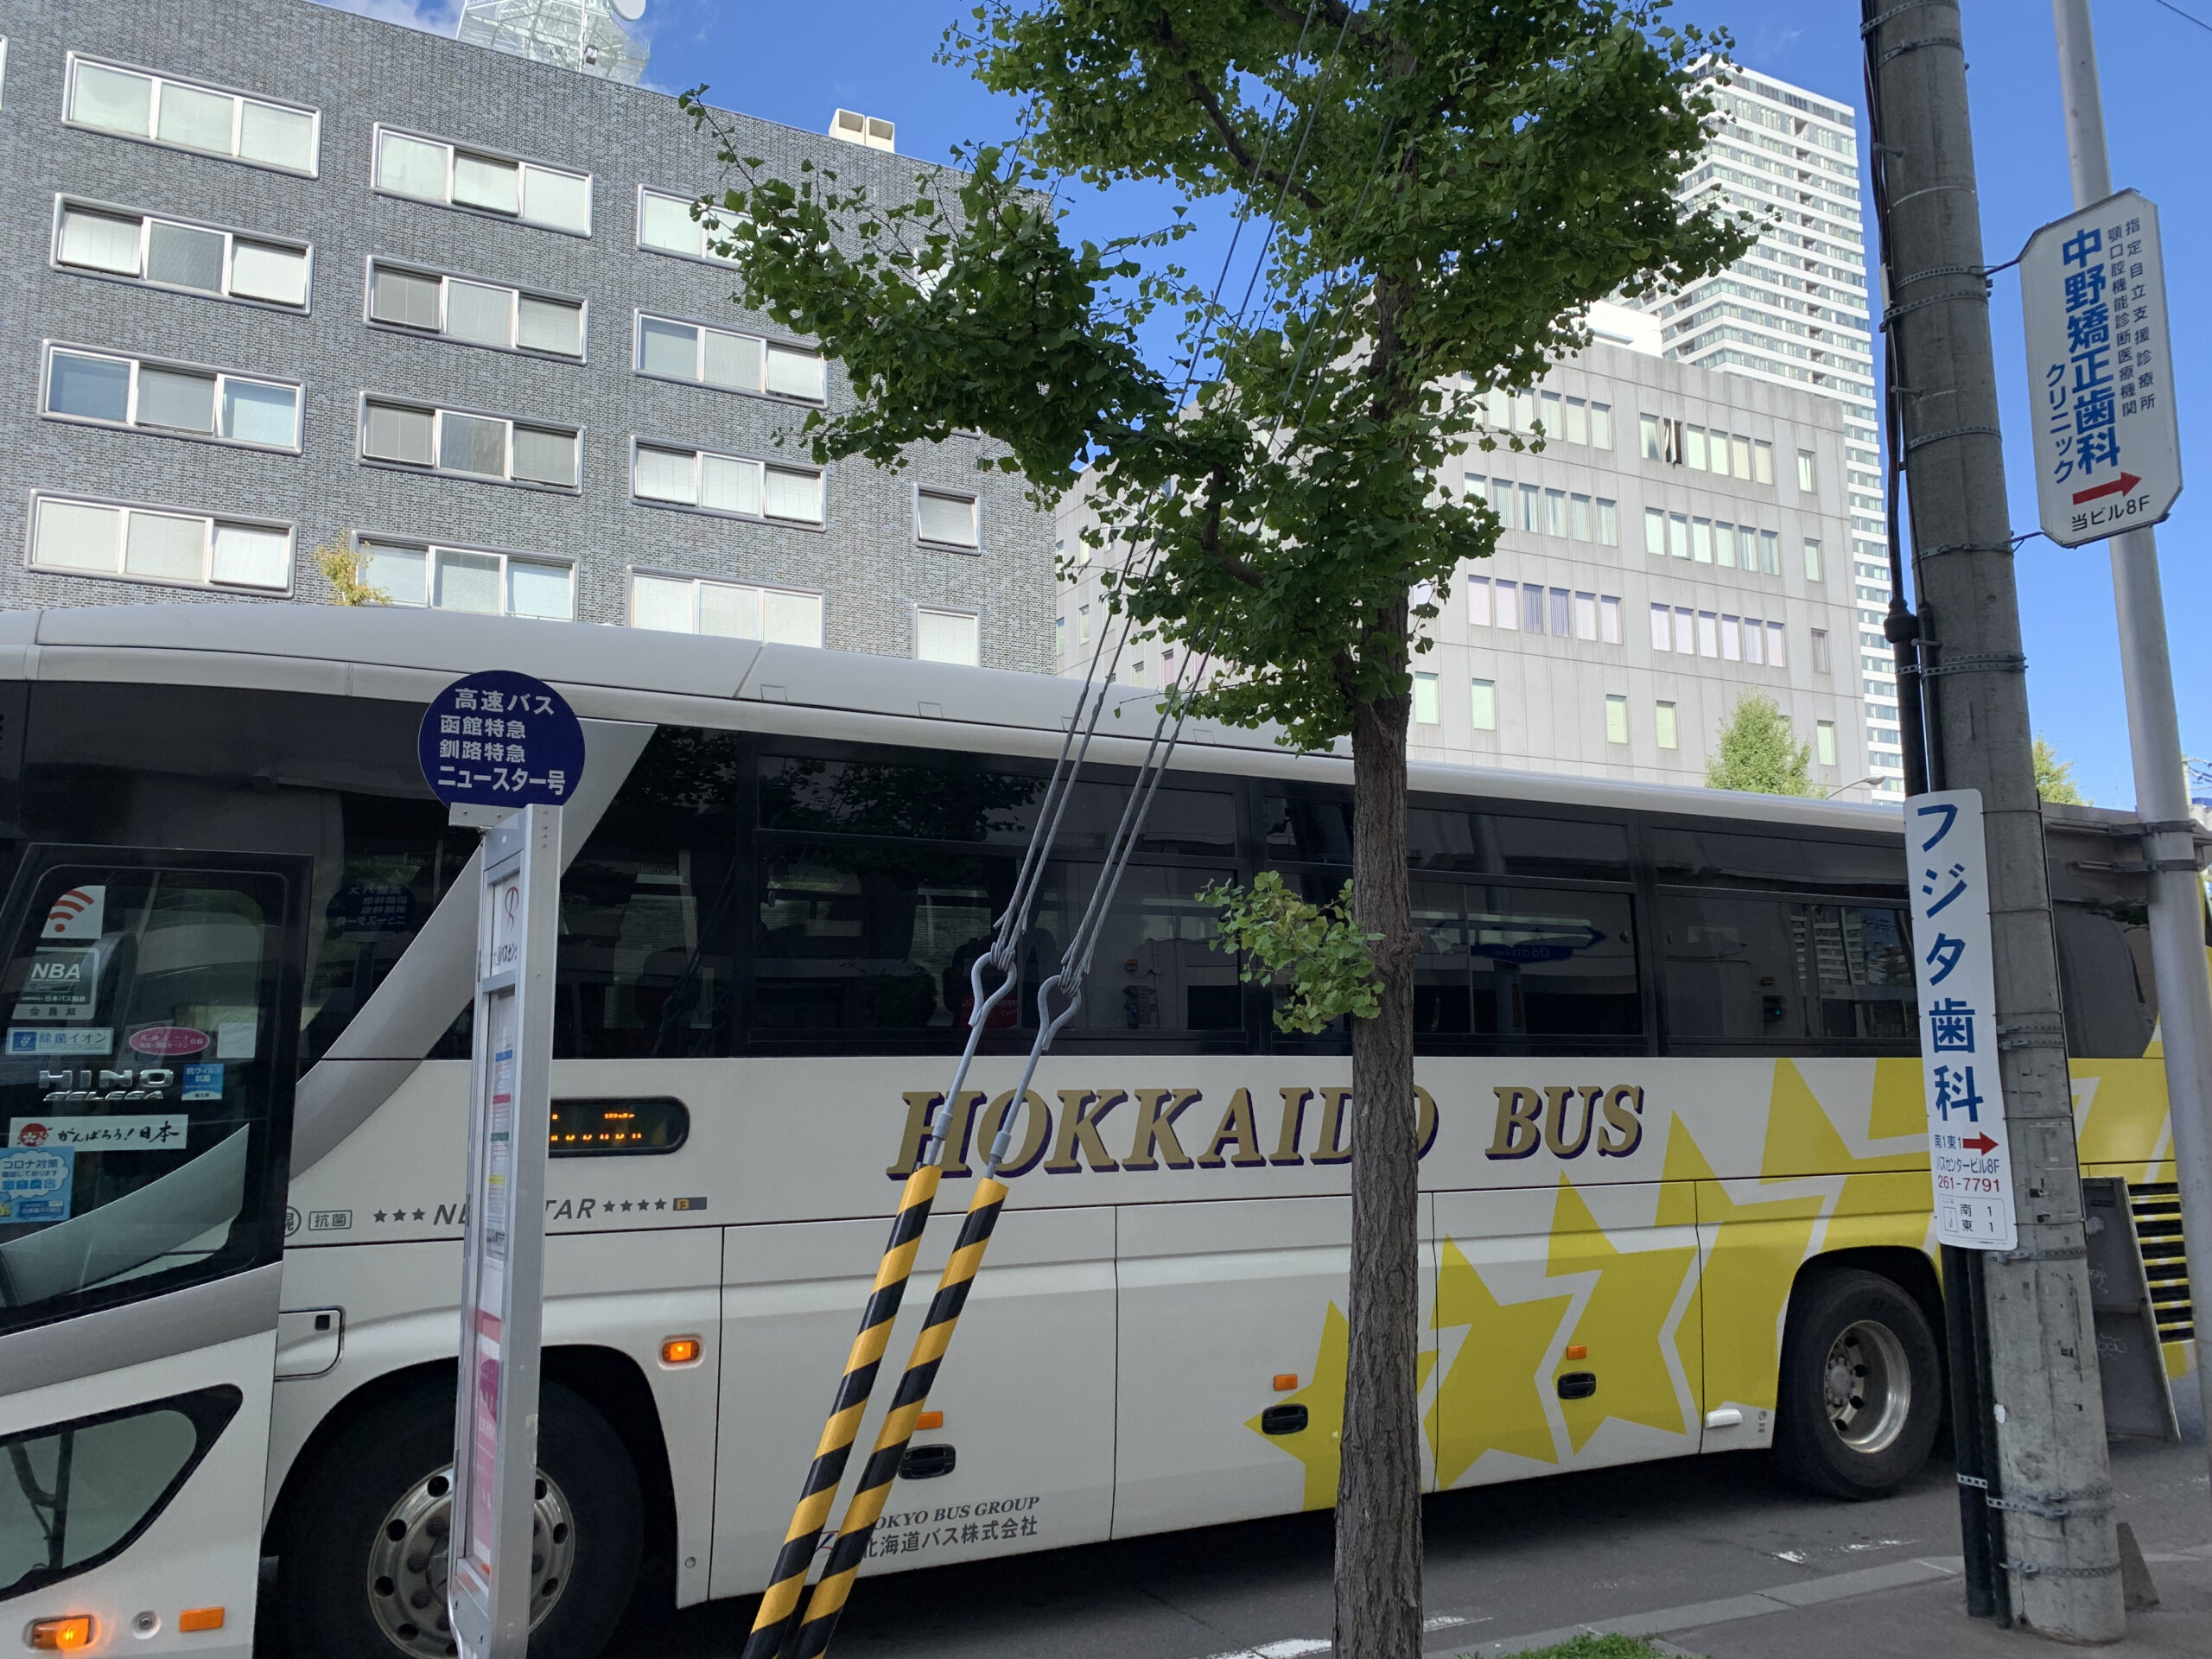 北海道の中心部である札幌までバスで移動してみよう。函館から札幌までの横断方法について。